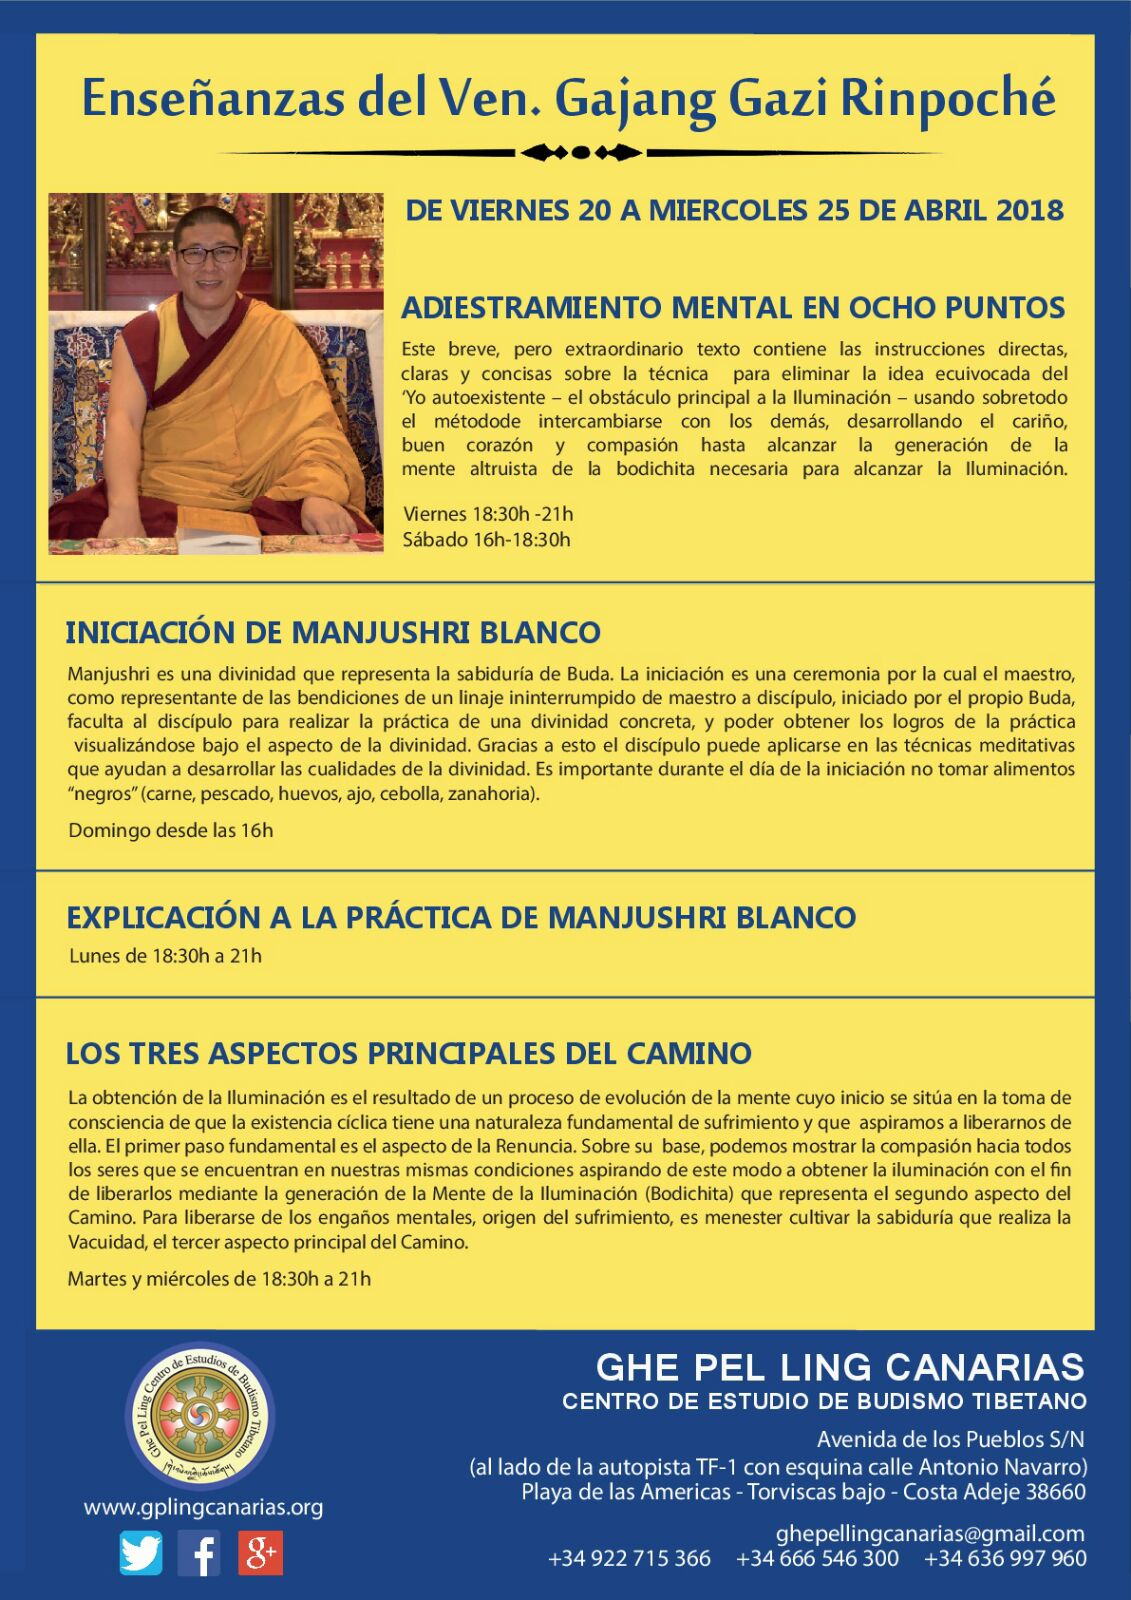 GhePelLing Canarias - Ven. Gajang Gazi Rinpoche - Enseñanzas, Budismo, Meditación Tibetana - poster